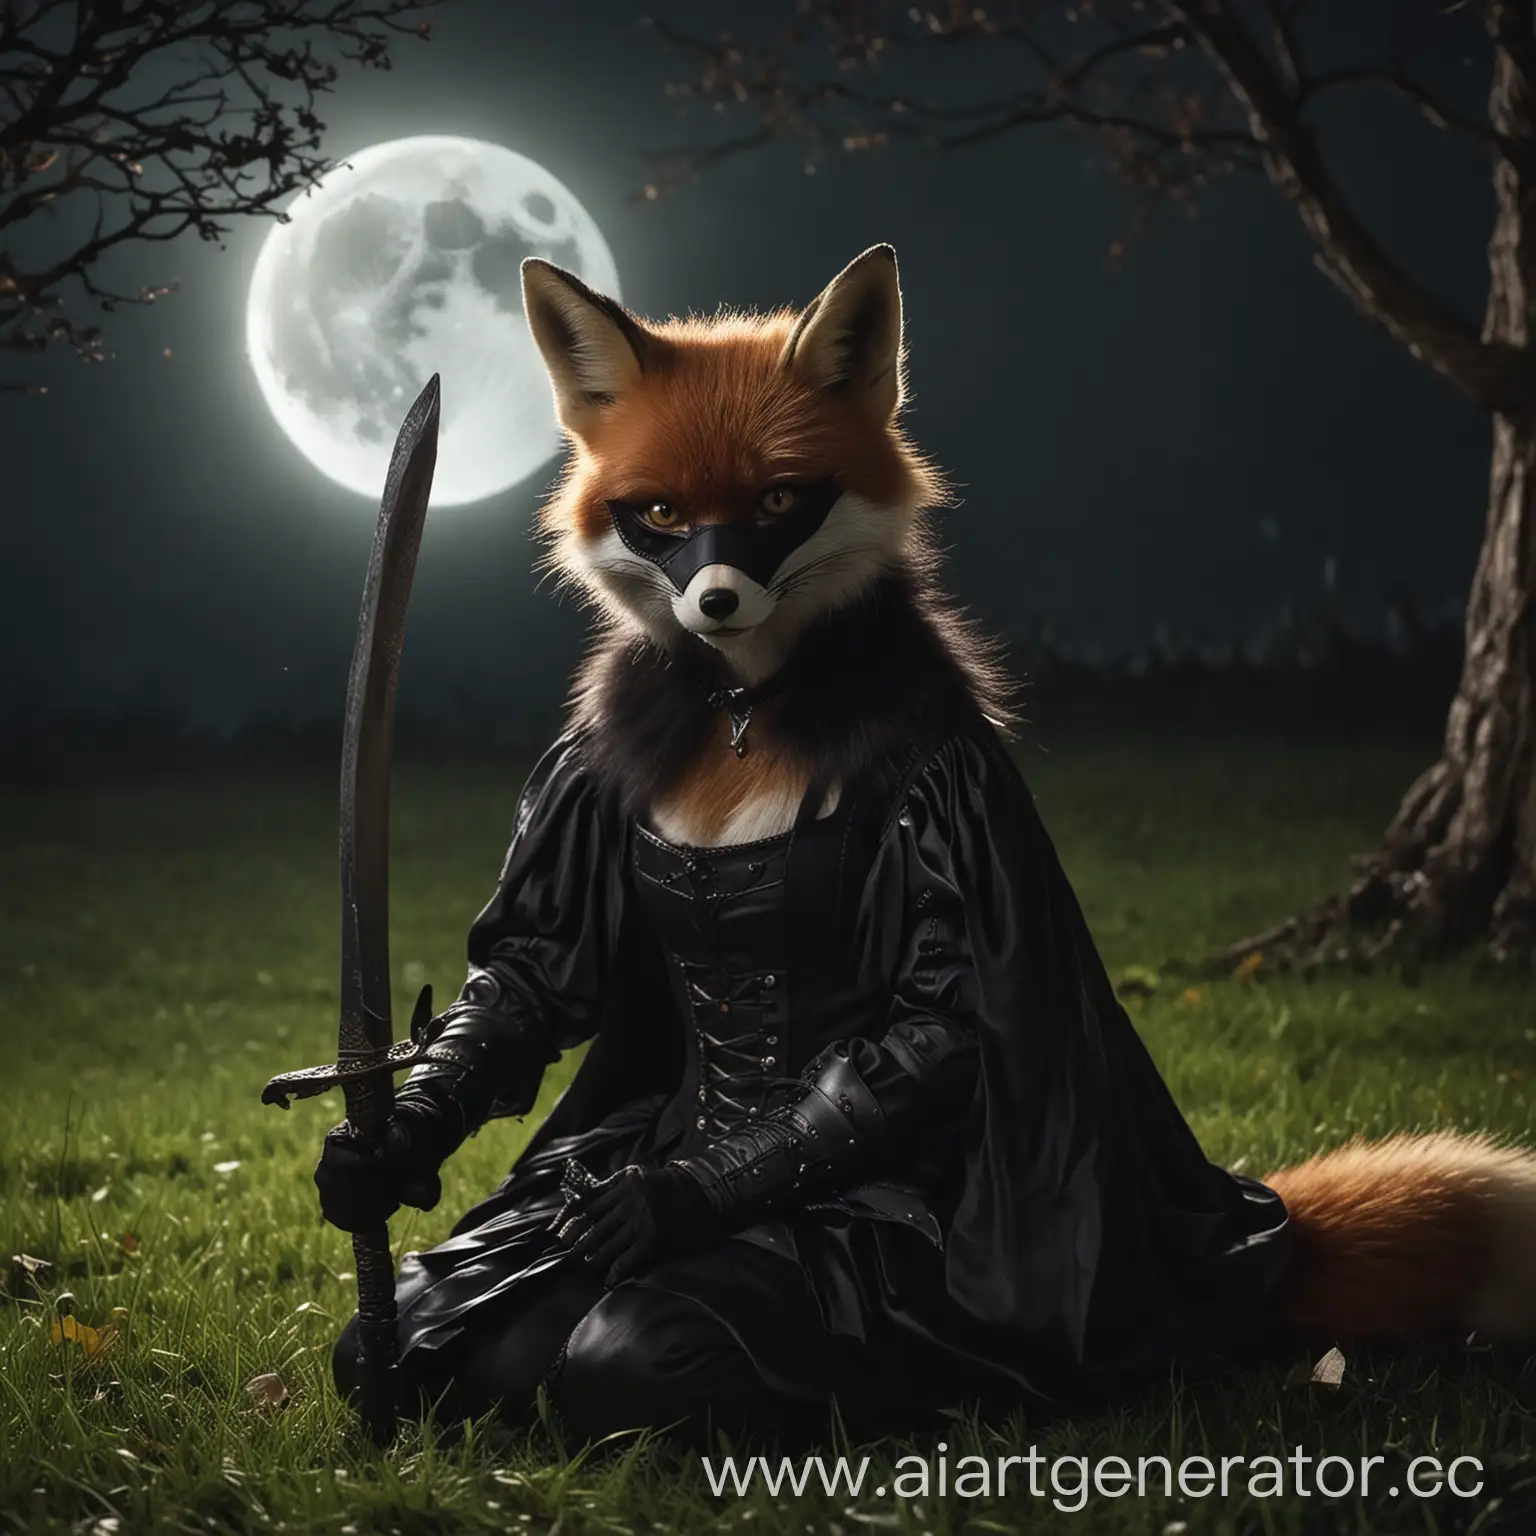 На траве сидит фурри лисица, дымного окраса в черном капюшоне и маске. Ее взгляд падает на меч, лежащий под лунным светом, ее глаза дают понять о её стервозном и хитром характере